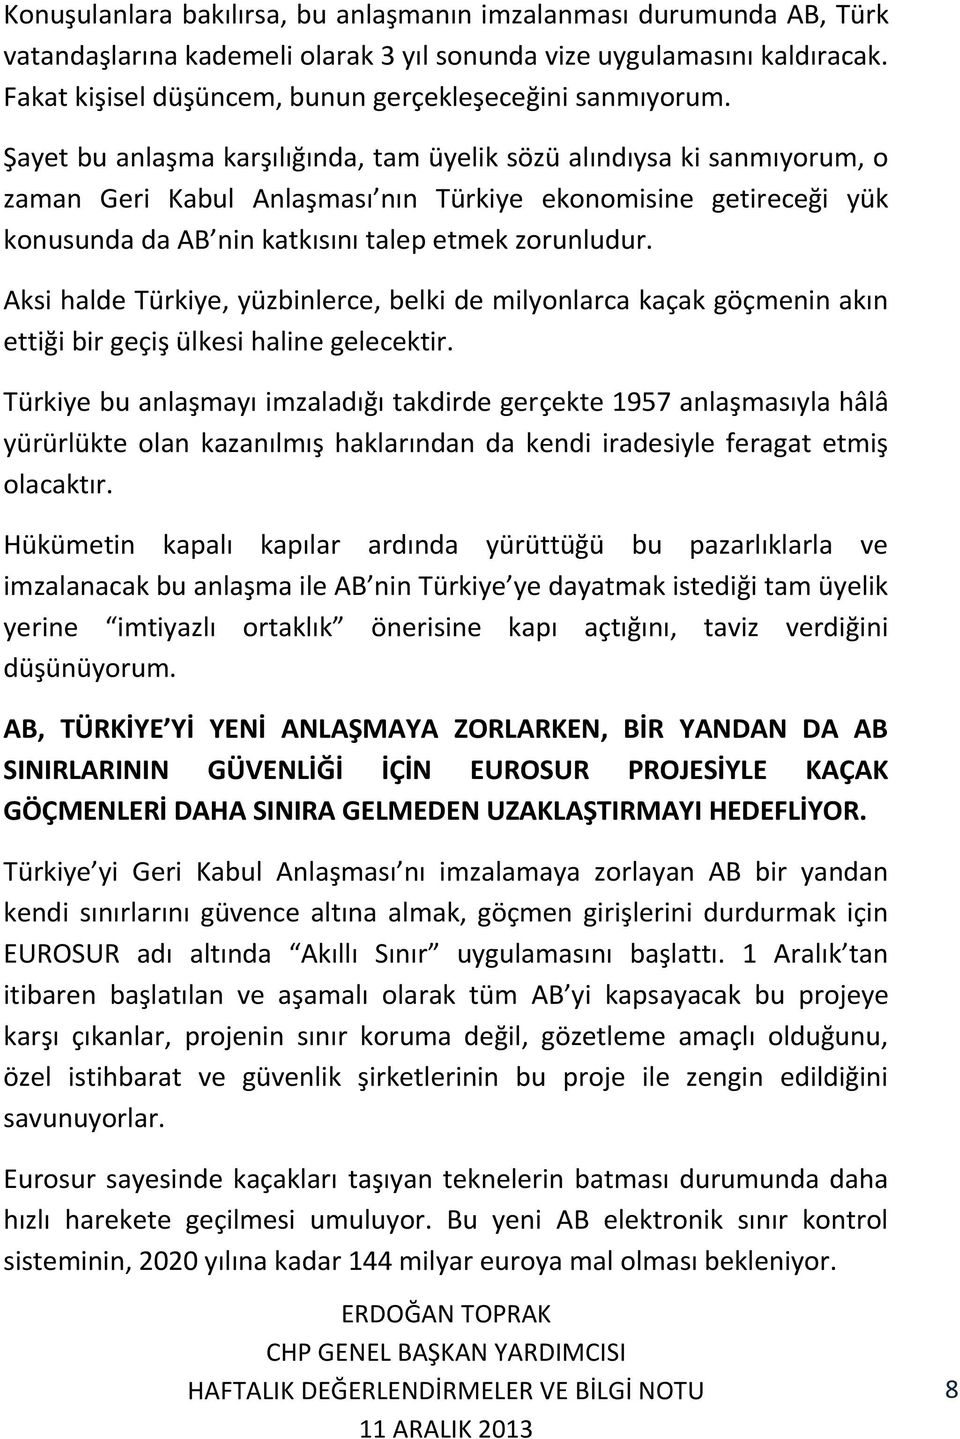 Şayet bu anlaşma karşılığında, tam üyelik sözü alındıysa ki sanmıyorum, o zaman Geri Kabul Anlaşması nın Türkiye ekonomisine getireceği yük konusunda da AB nin katkısını talep etmek zorunludur.